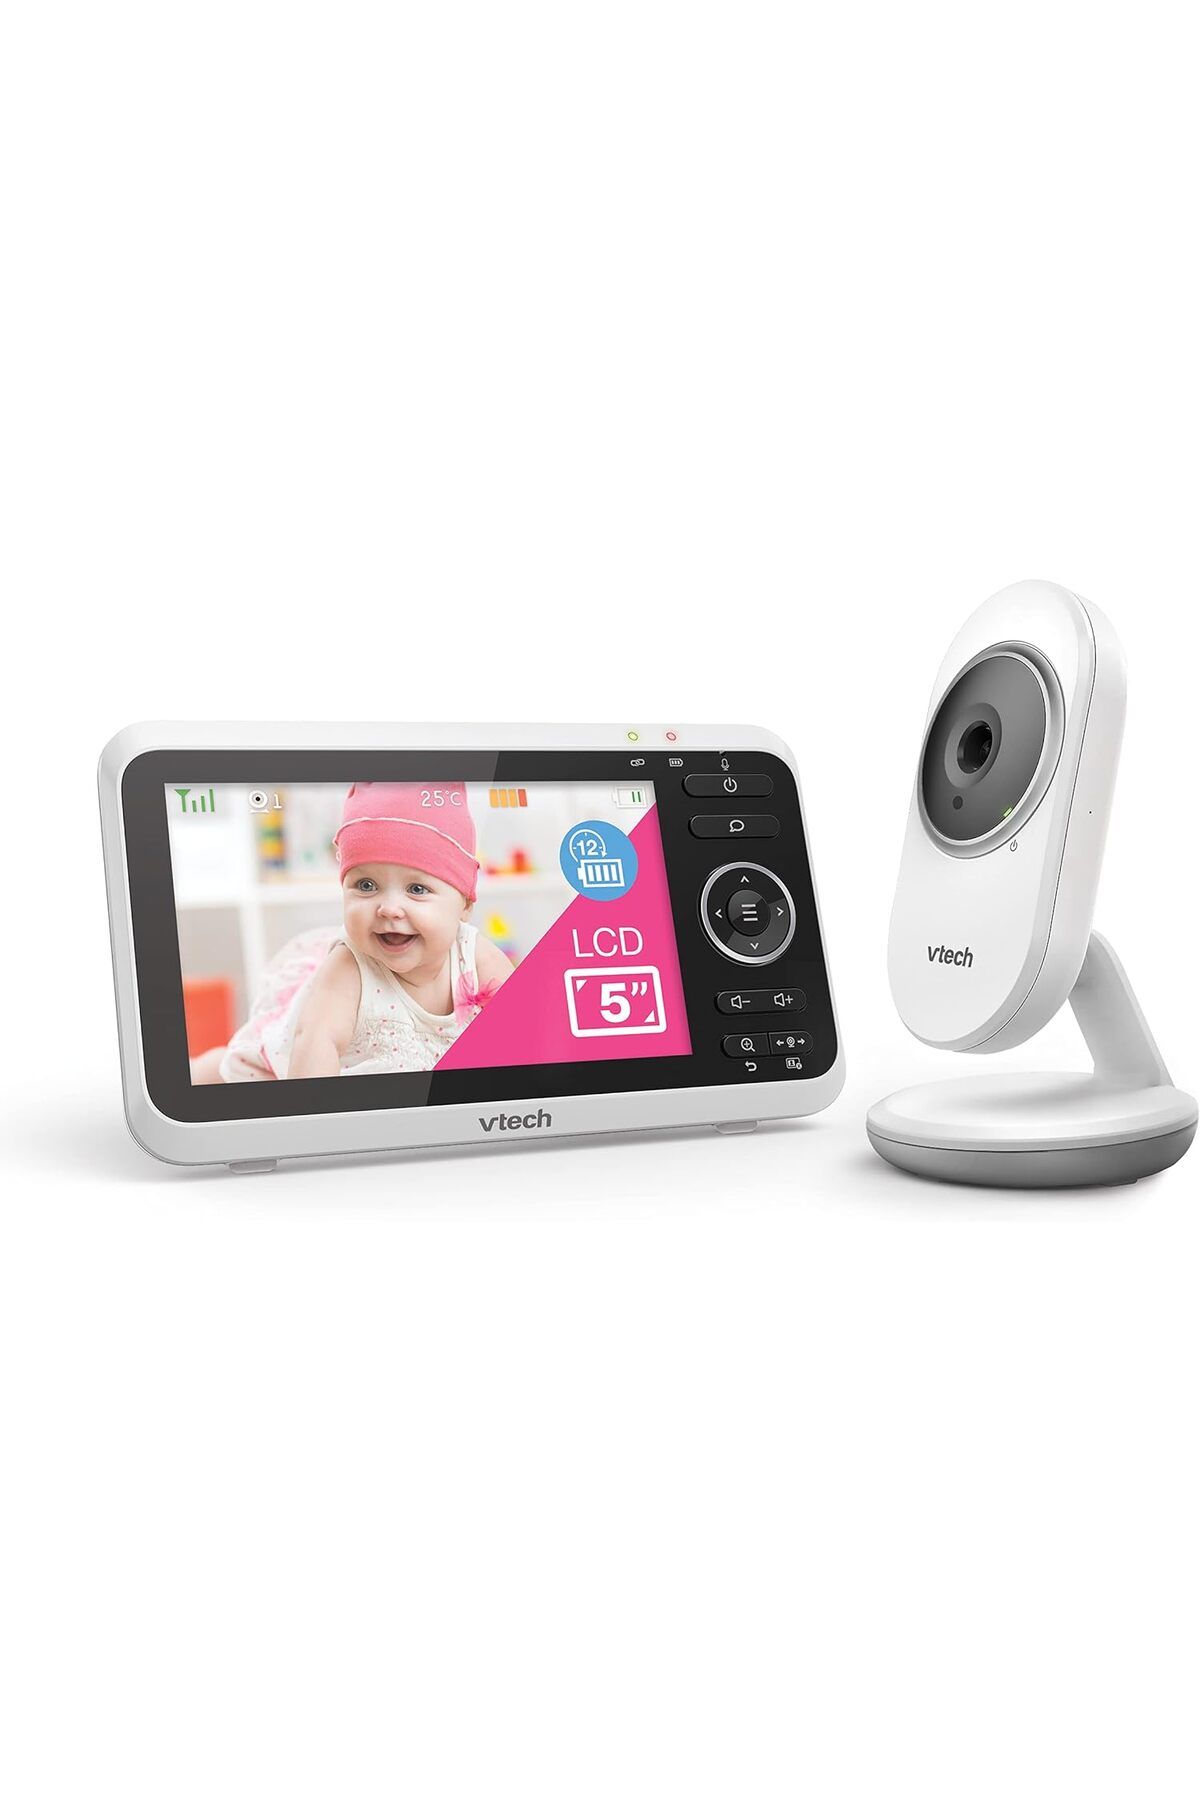 VTech Baby Hareketli bebek Kamerası,LCD renkli ekran ve gece görüş,karşılıklı konuşma fonksiyonu, ninniler